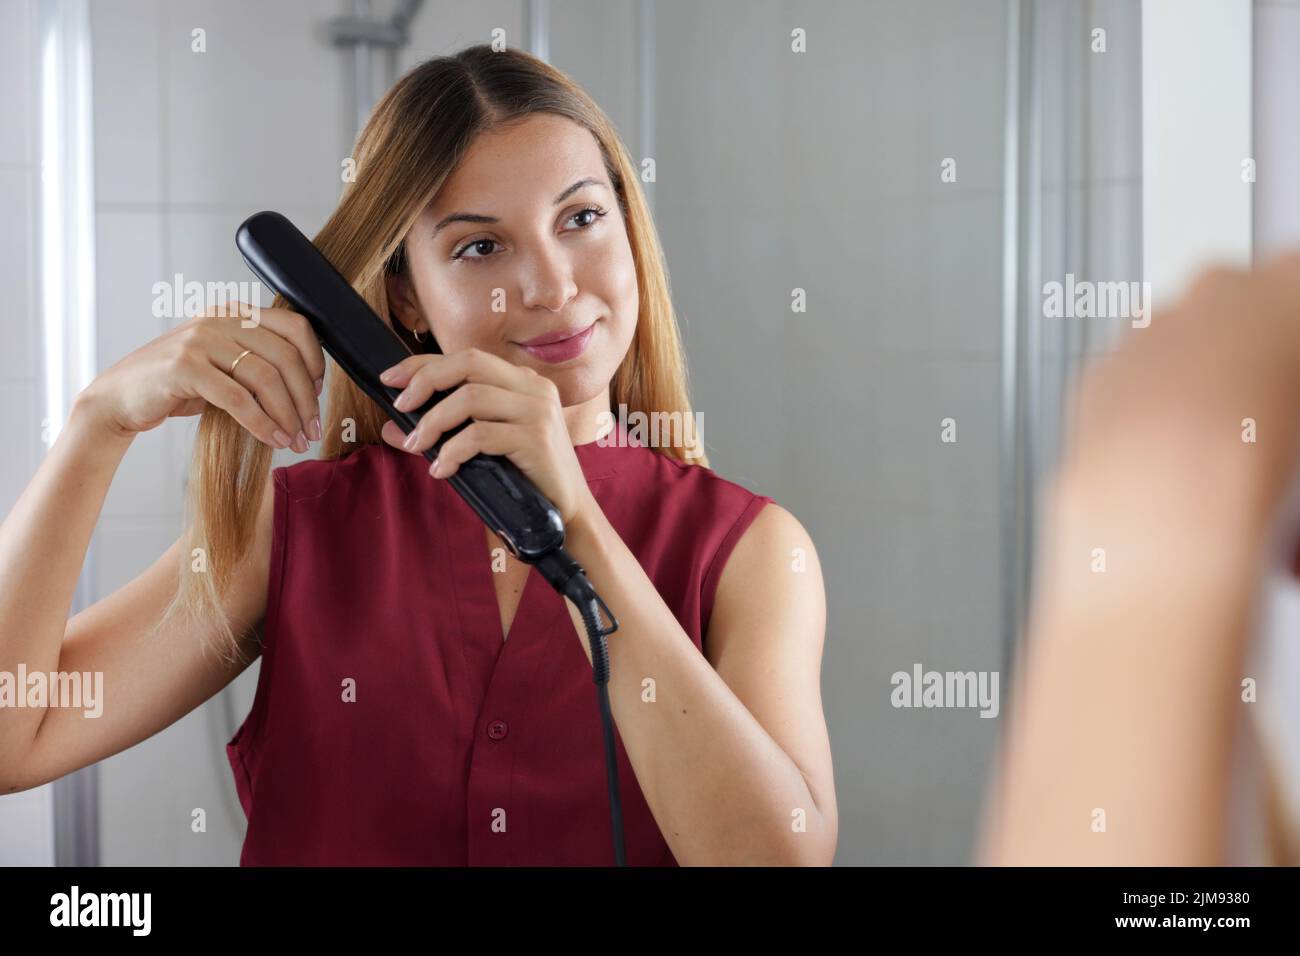 Belle jeune femme utilisant un lisseur vapeur pour coiffer les cheveux au miroir de la salle de bains Banque D'Images